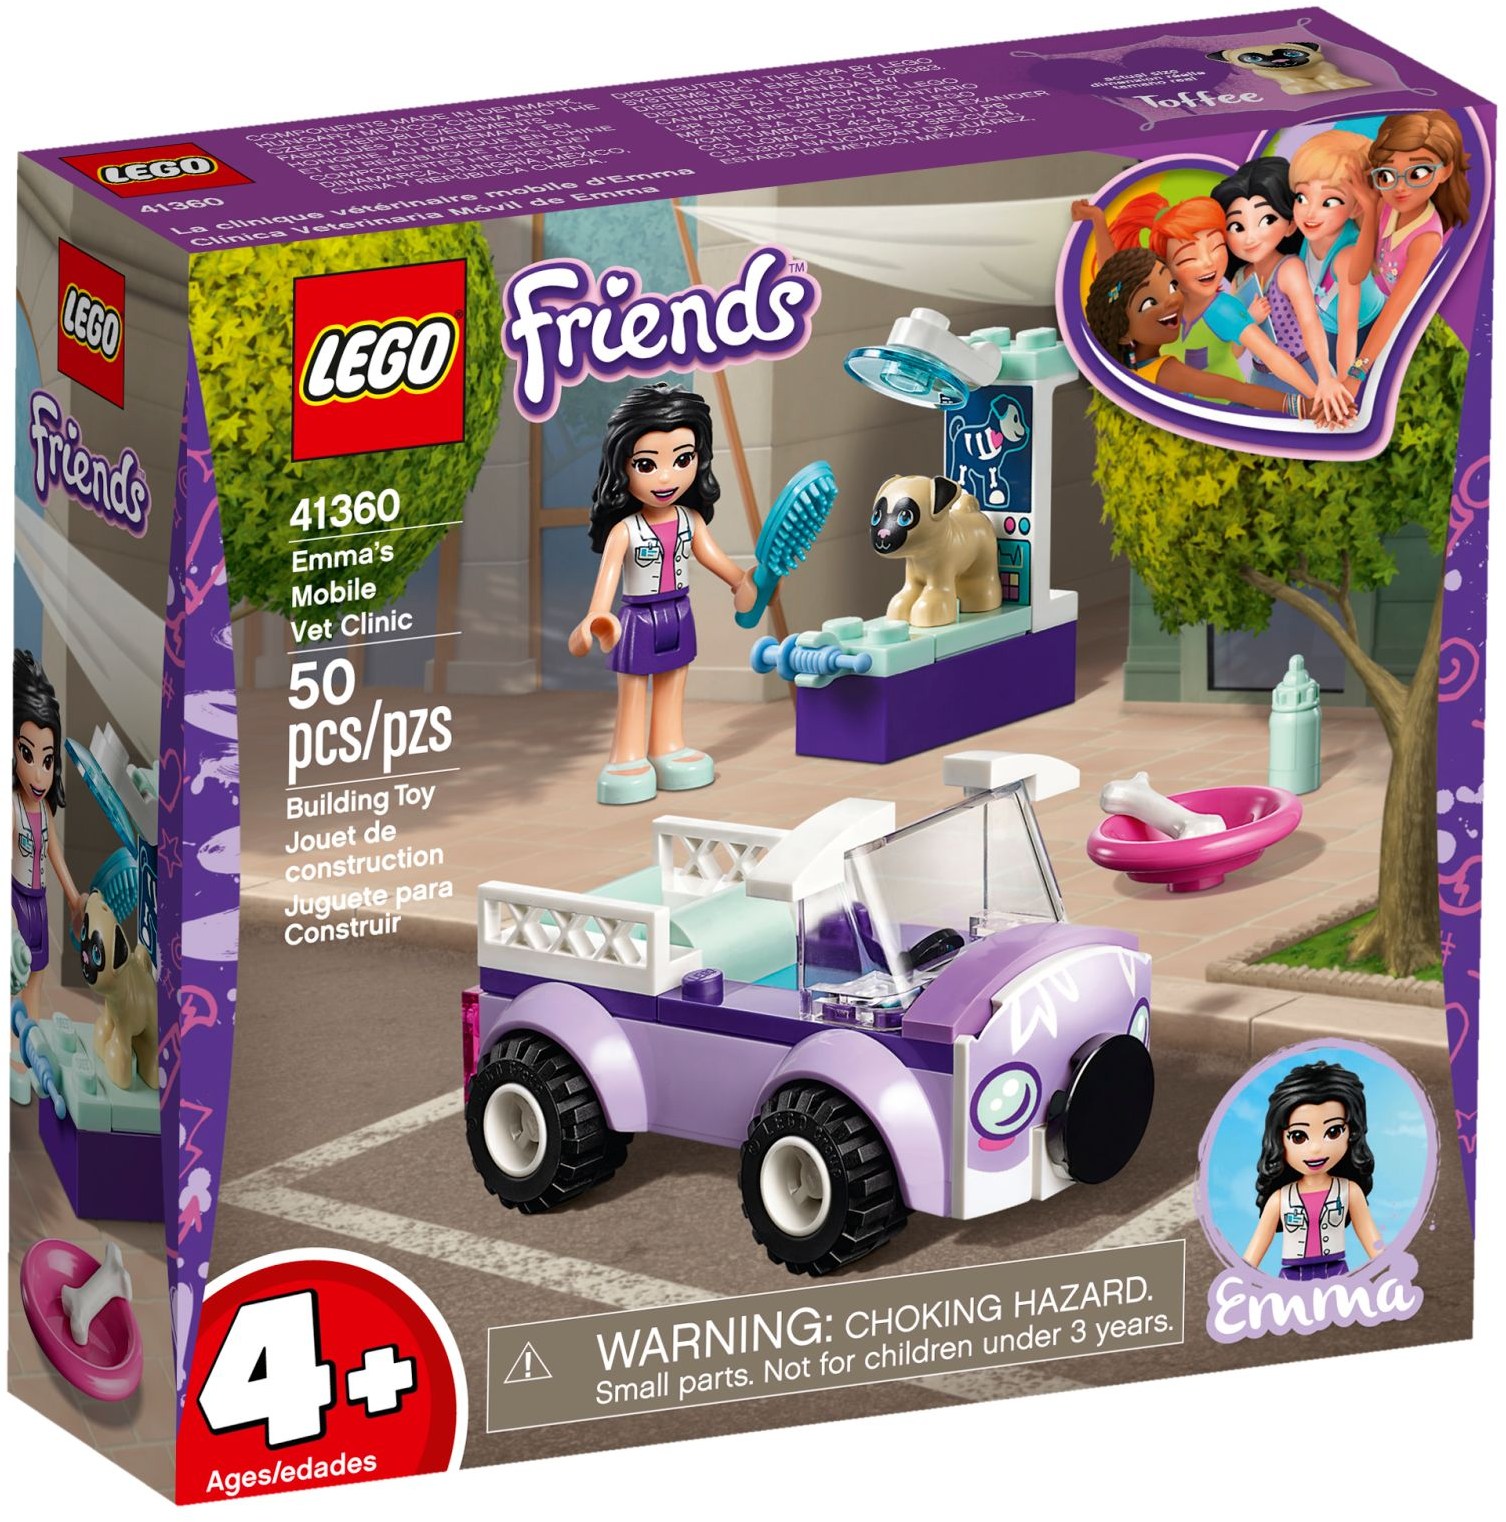 Emma's Mobile Vet (41360) | LEGO Friends Wiki | Fandom